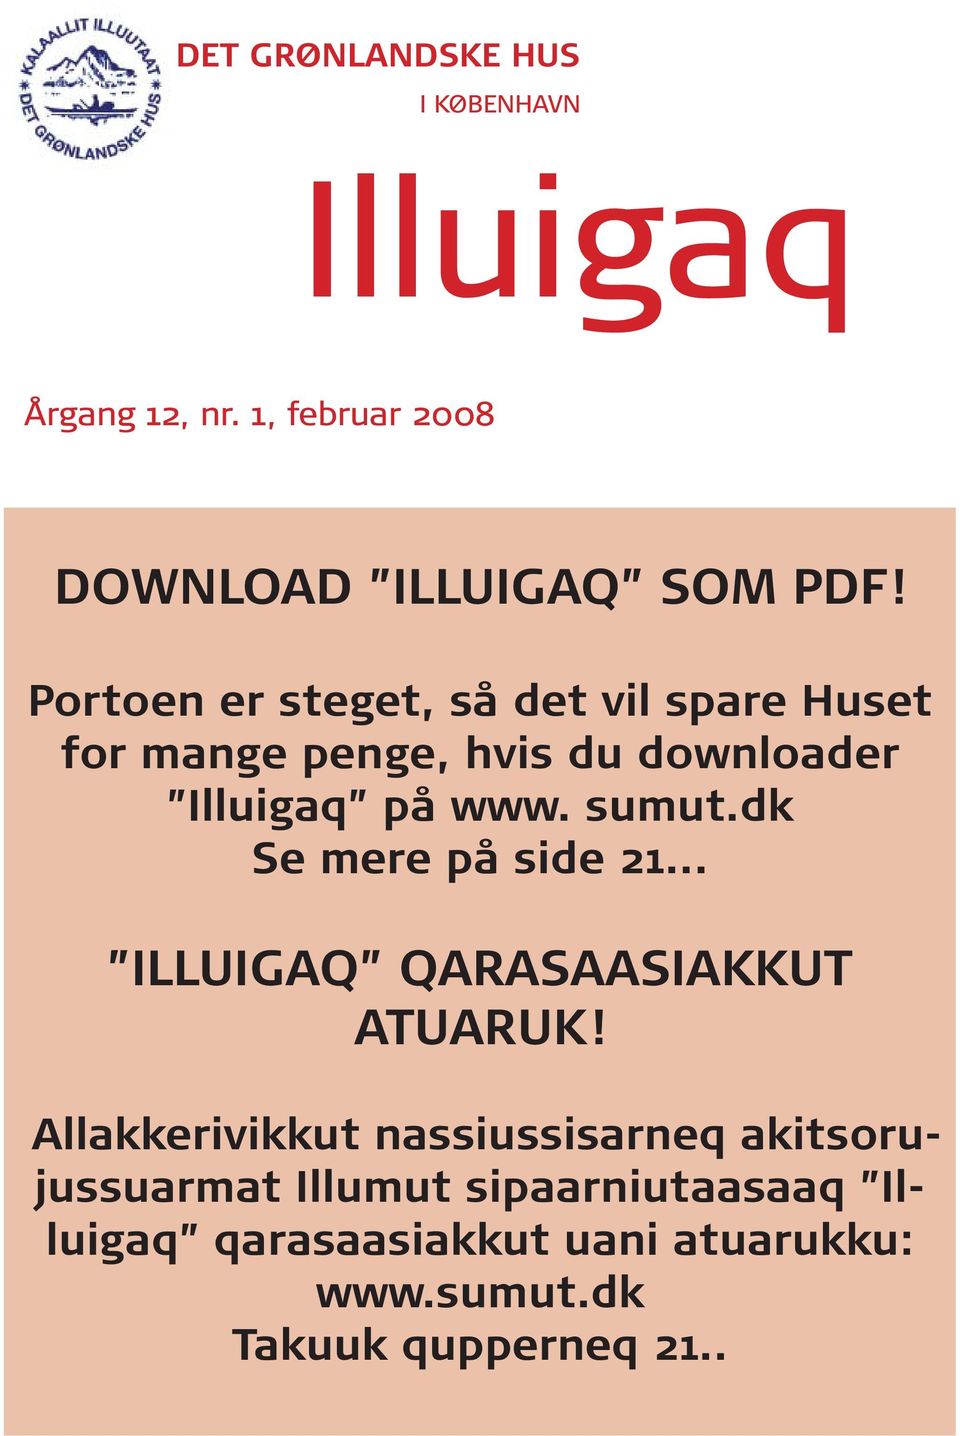 Portoen er steget, så det vil spare Huset for mange penge, hvis du downloader Illuigaq på www. sumut.